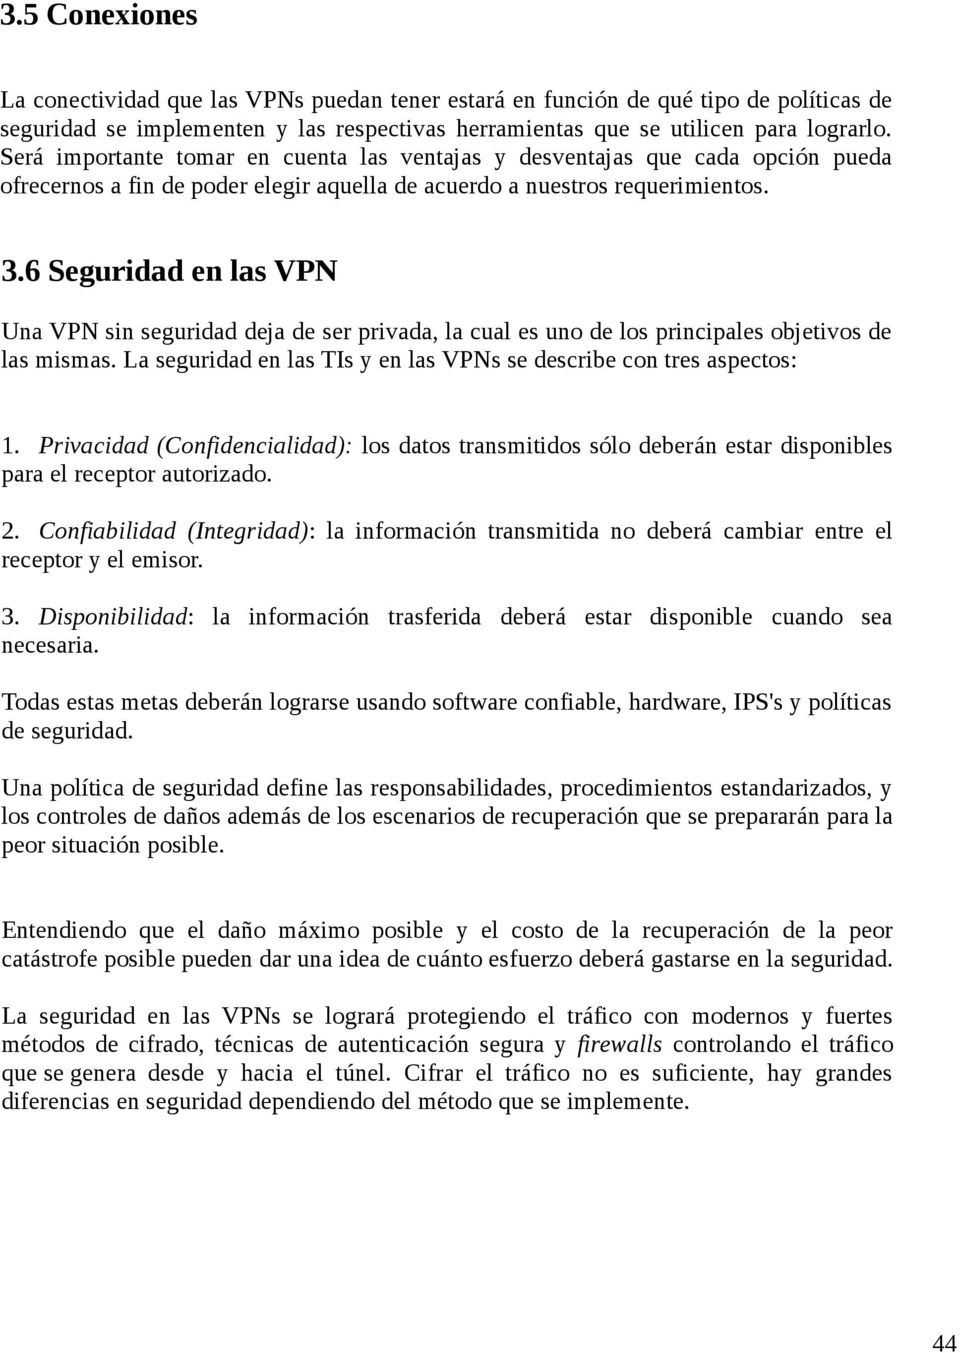 6 Seguridad en las VPN Una VPN sin seguridad deja de ser privada, la cual es uno de los principales objetivos de las mismas. La seguridad en las TIs y en las VPNs se describe con tres aspectos: 1.